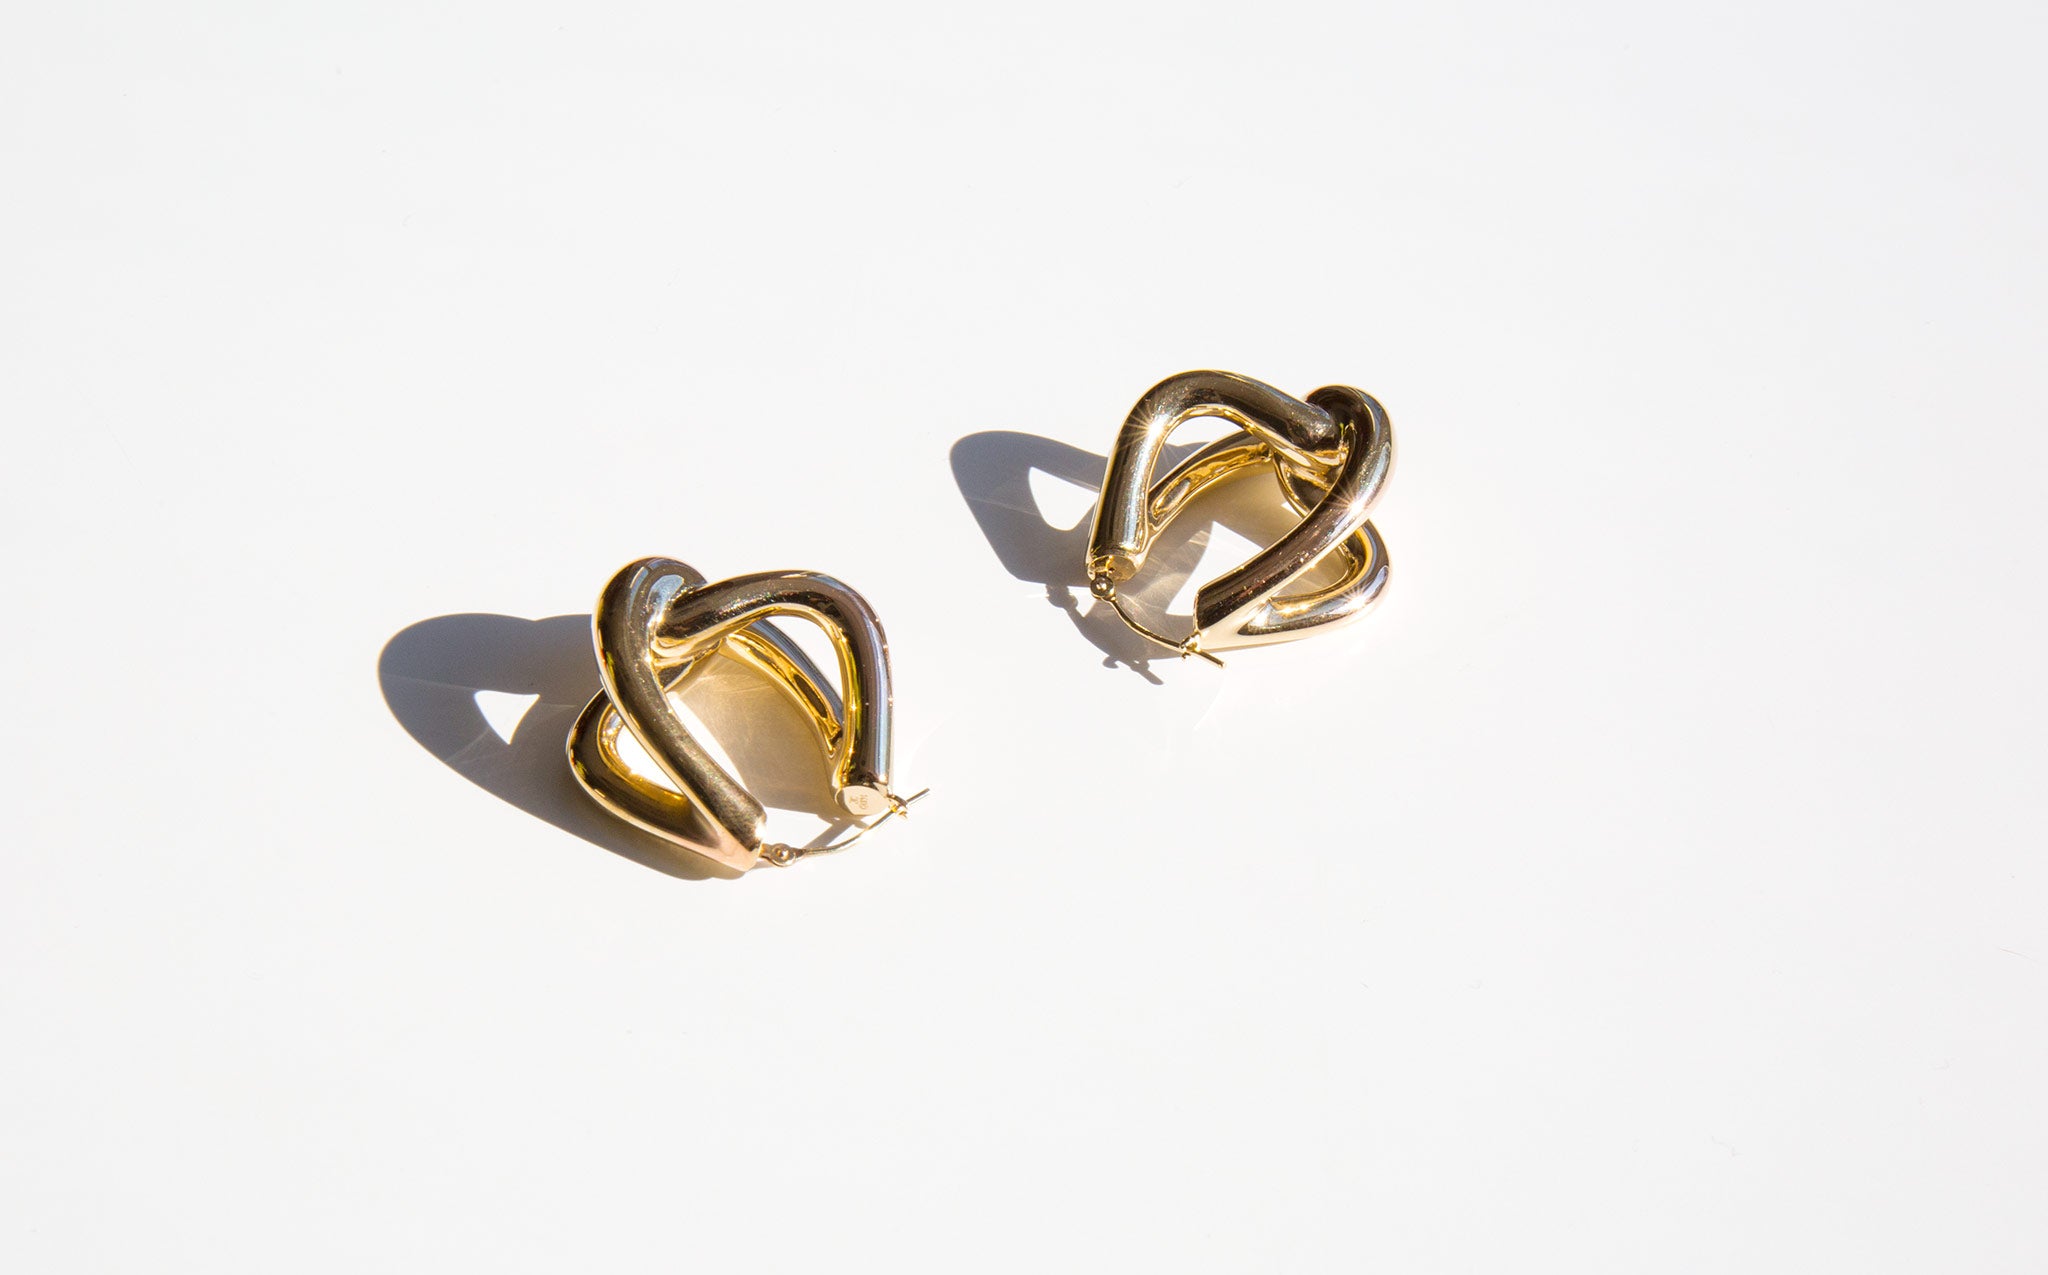 The Golden Knot Earrings